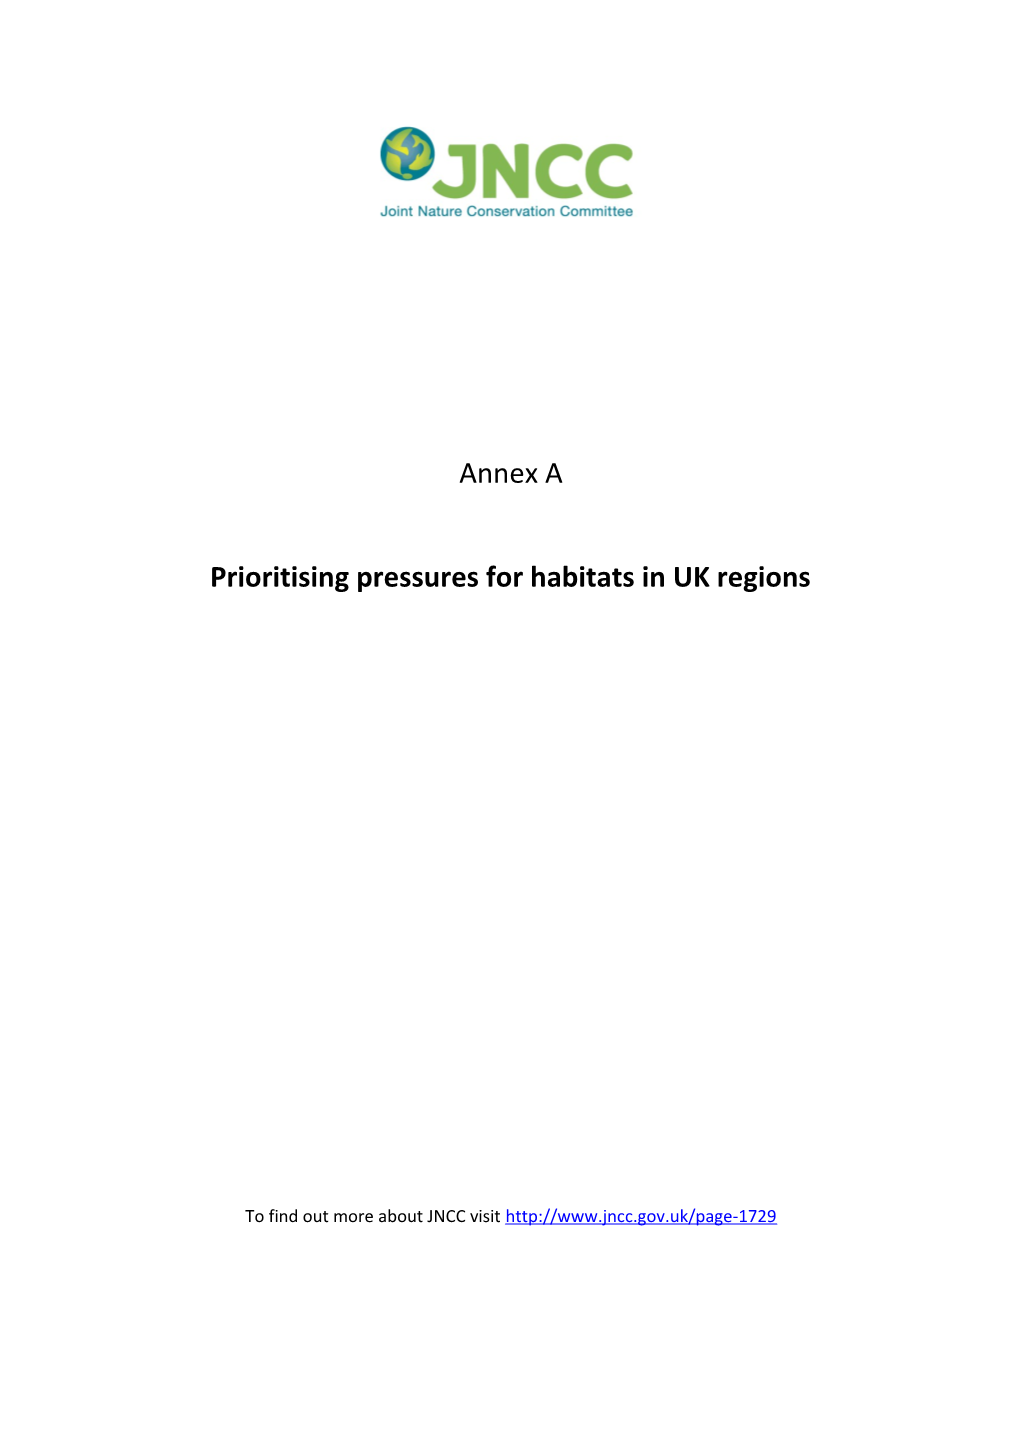 Prioritising Pressures for Habitats in UK Regions